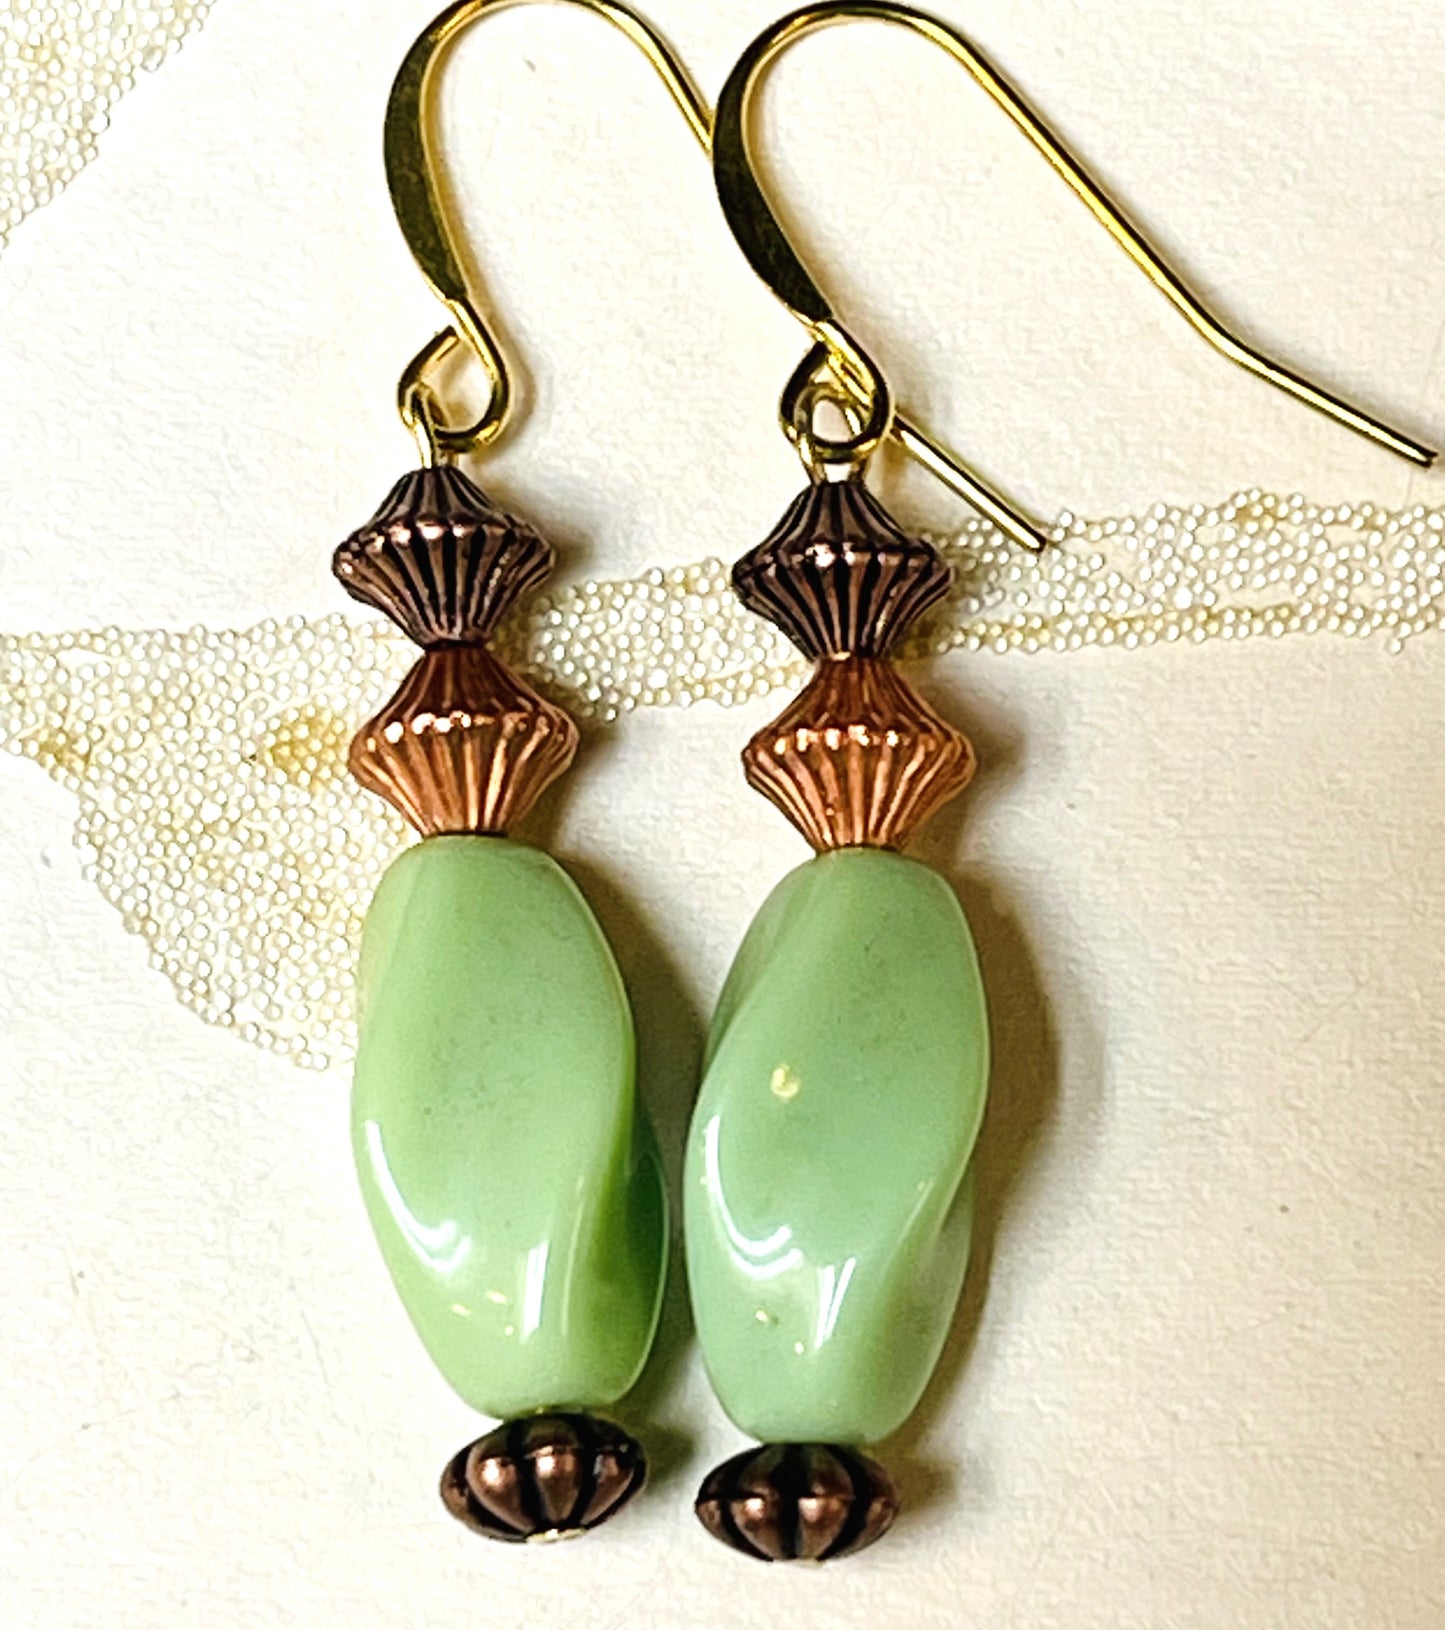 Sea Green Twisted Vintage Glass Czech Bead Earrings. Hypoallergenic French Earrings Hooks, Gold Plated Ear Wire.